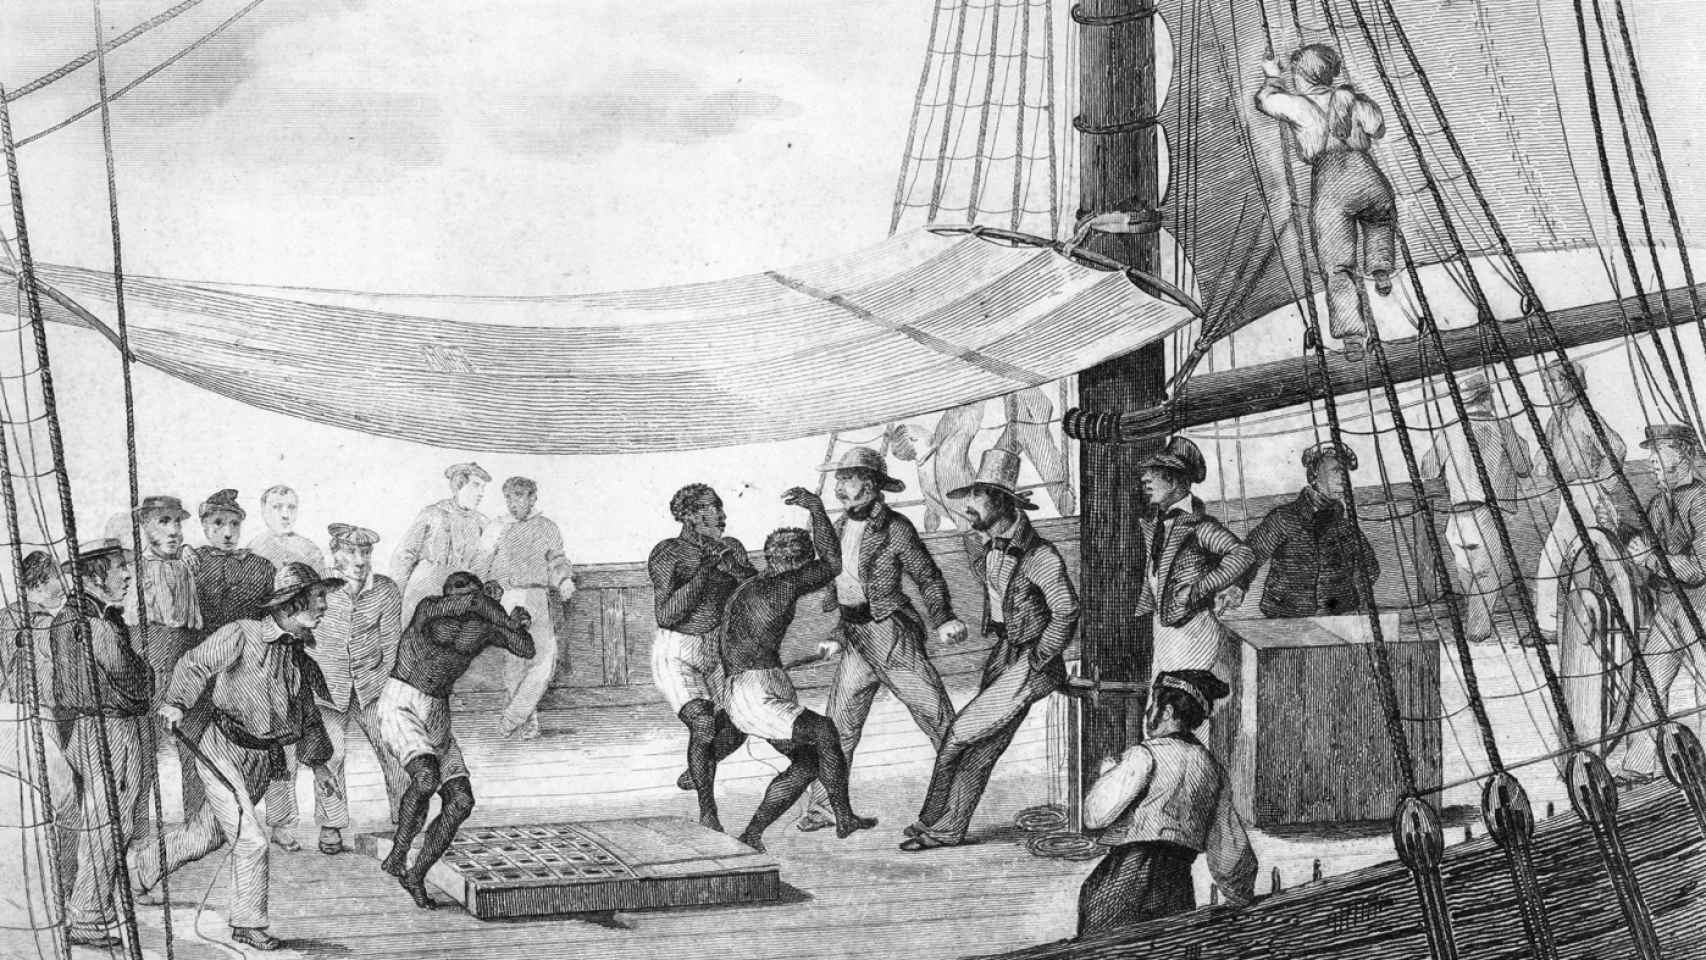 Una escena en un barco negrero con esclavos bailando entre marinos con látigos.